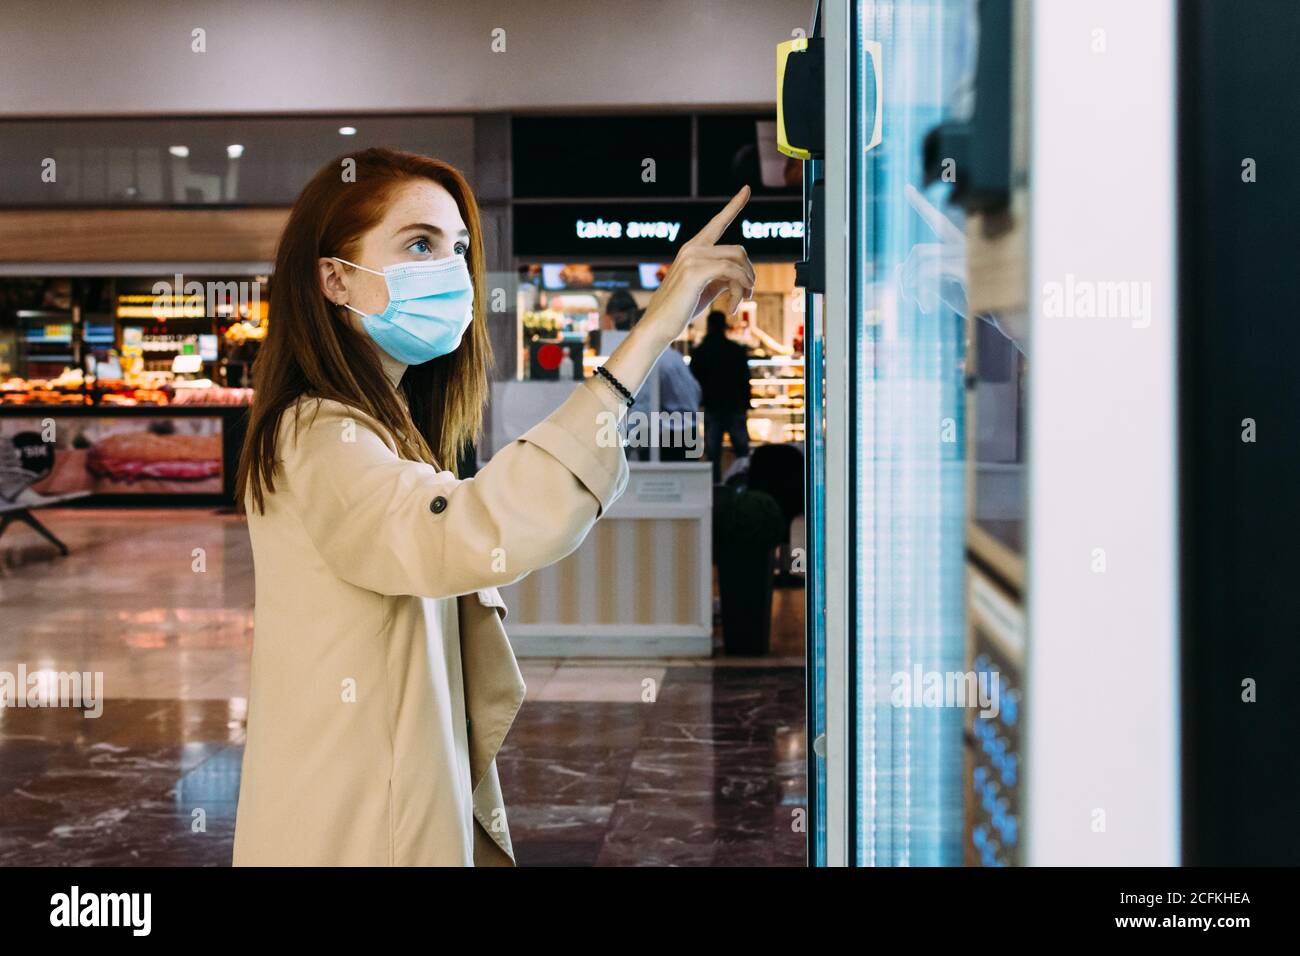 Frau mit einer Gesichtsmaske nutzt den Automaten zu Kaufen Sie einen Snack Stockfoto